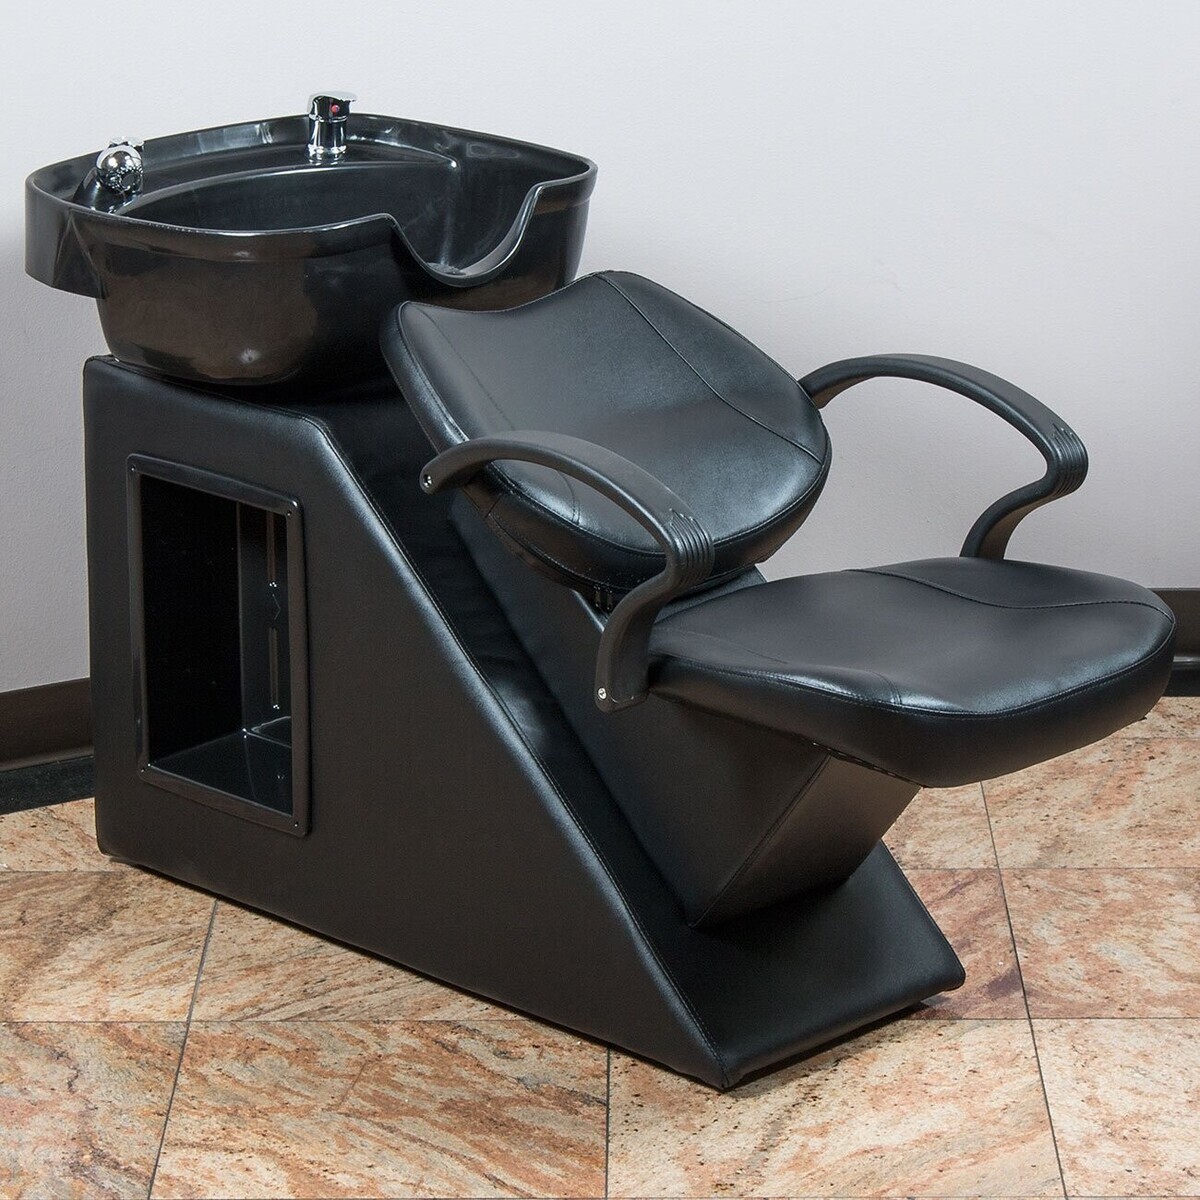 Achat et location de stations de salon pour laver les cheveux et les bols de shampoing en Israël